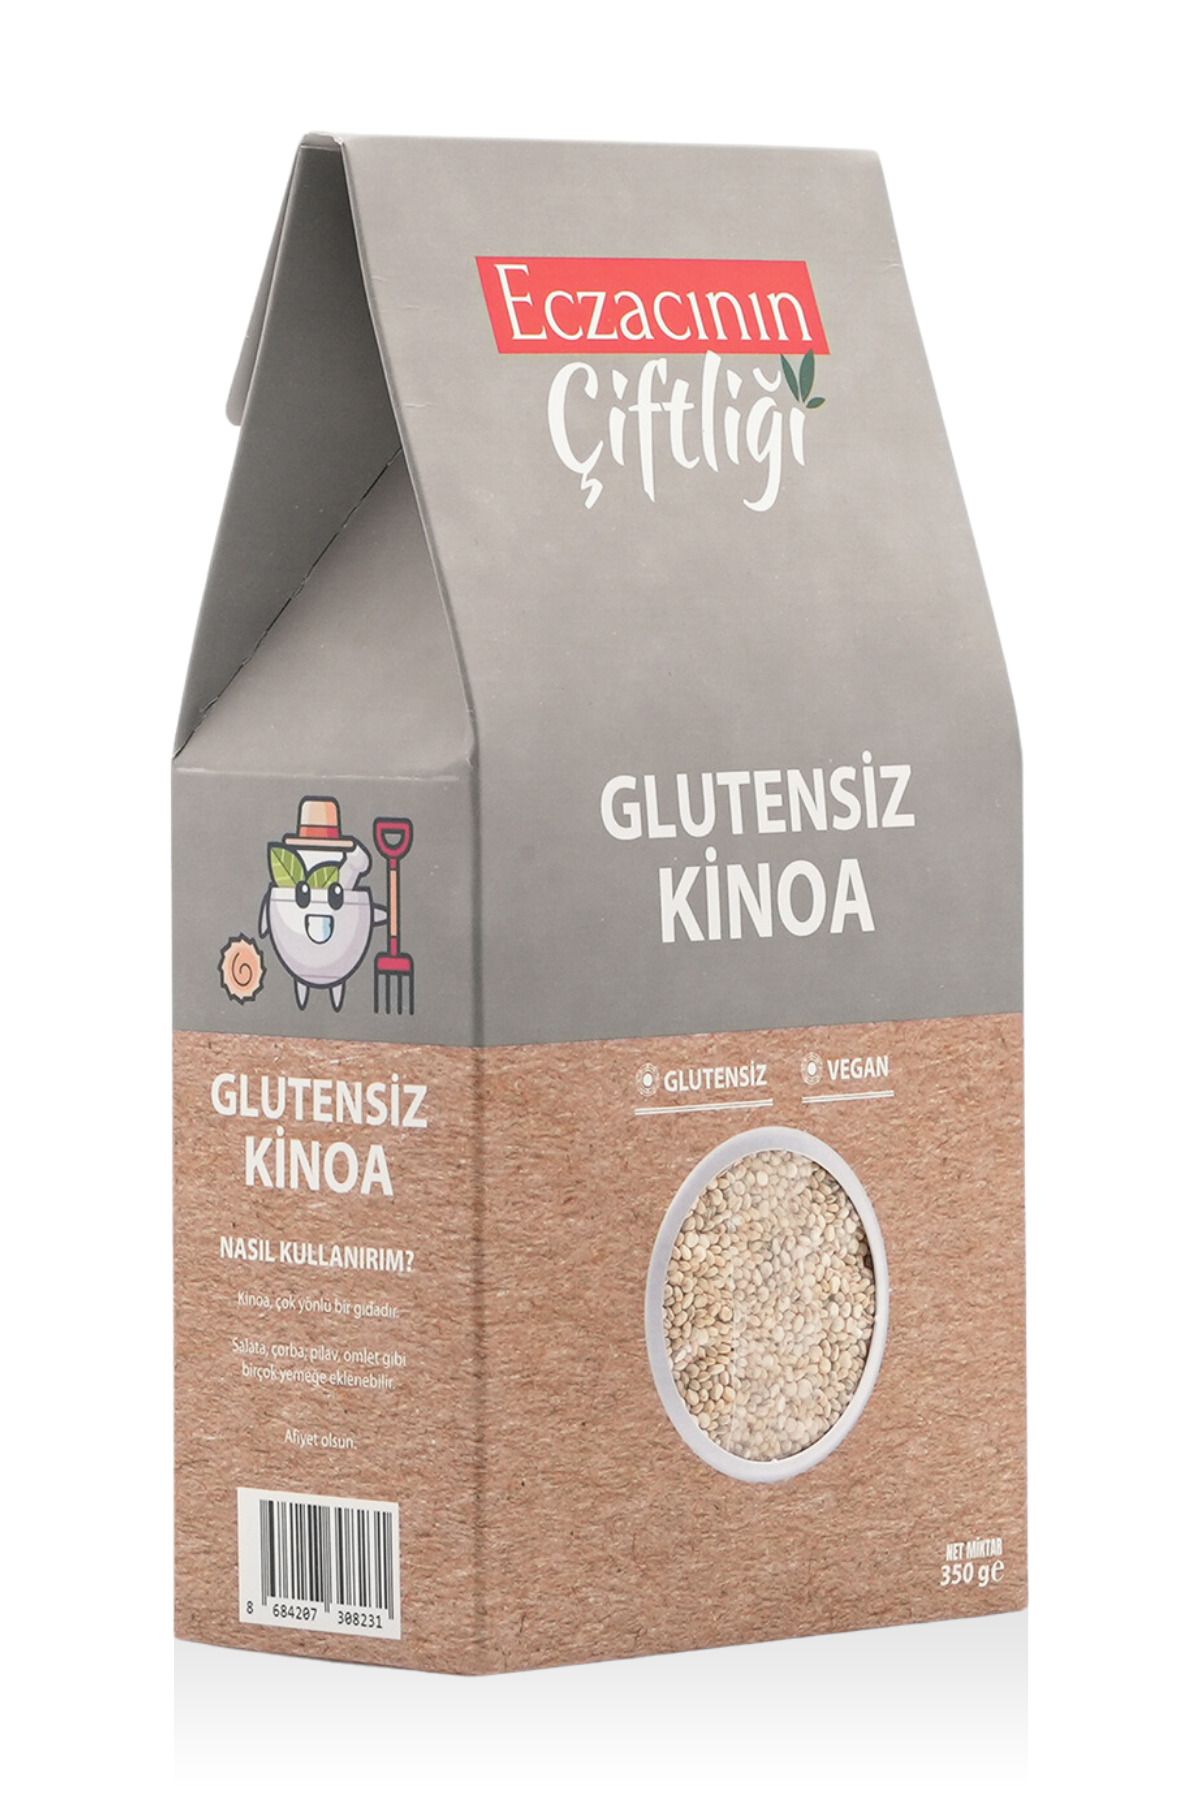 Eczacının Çiftliği Glutensiz Vegan Kinoa 350 gr - Quinoa